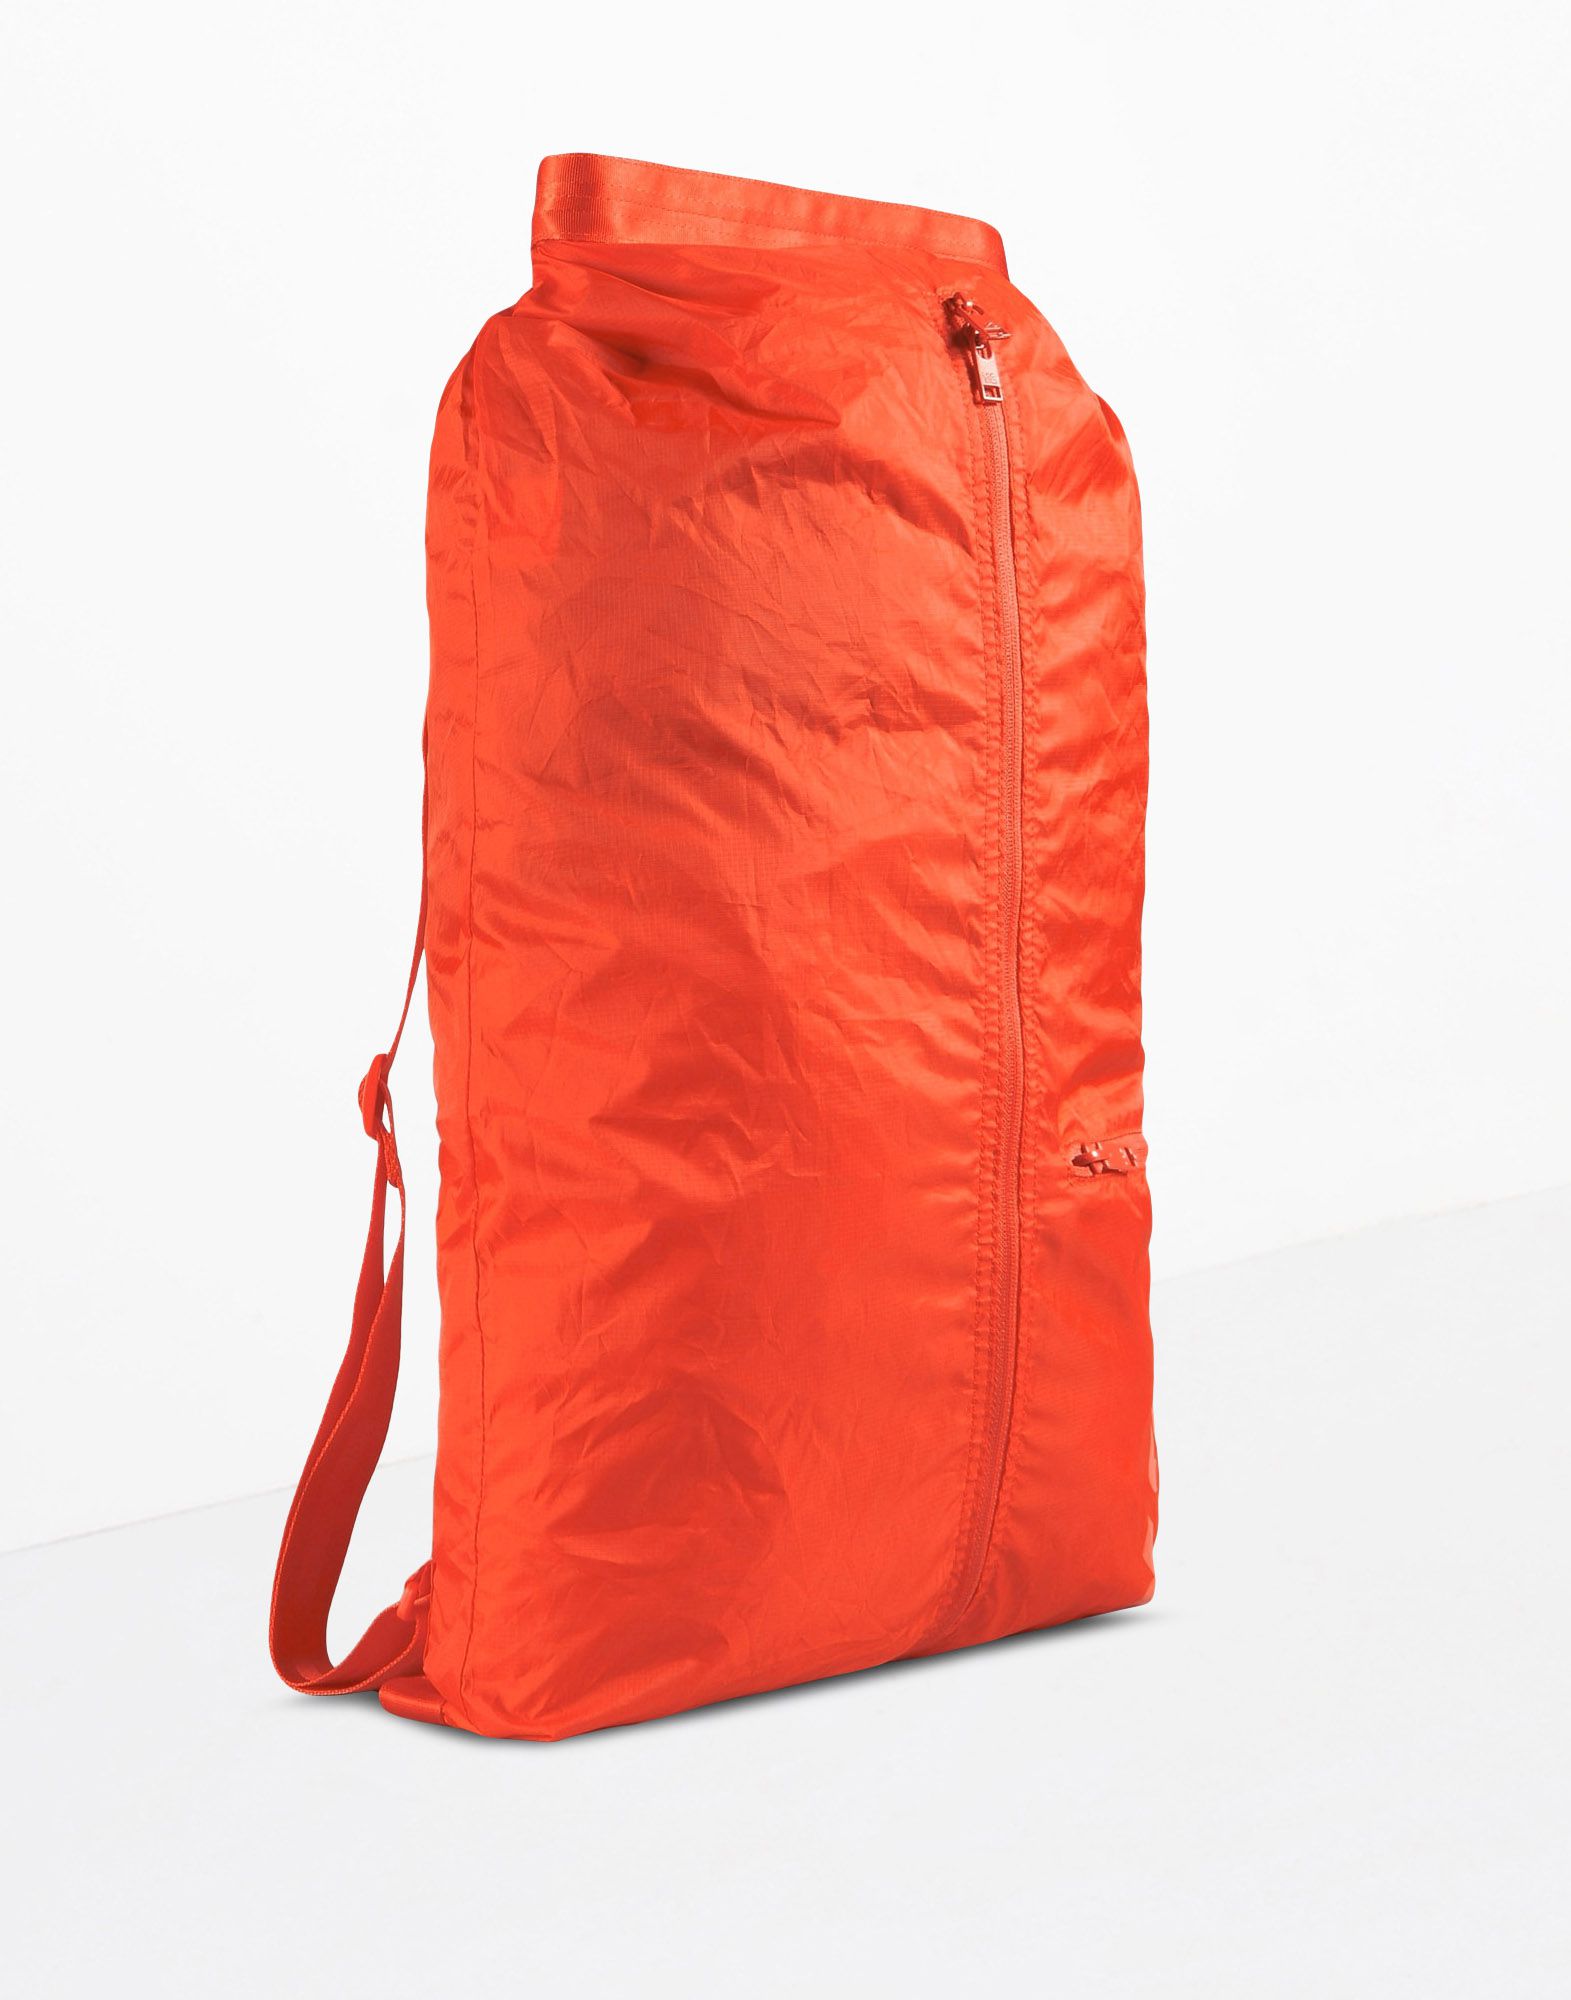 adidas backpack orange